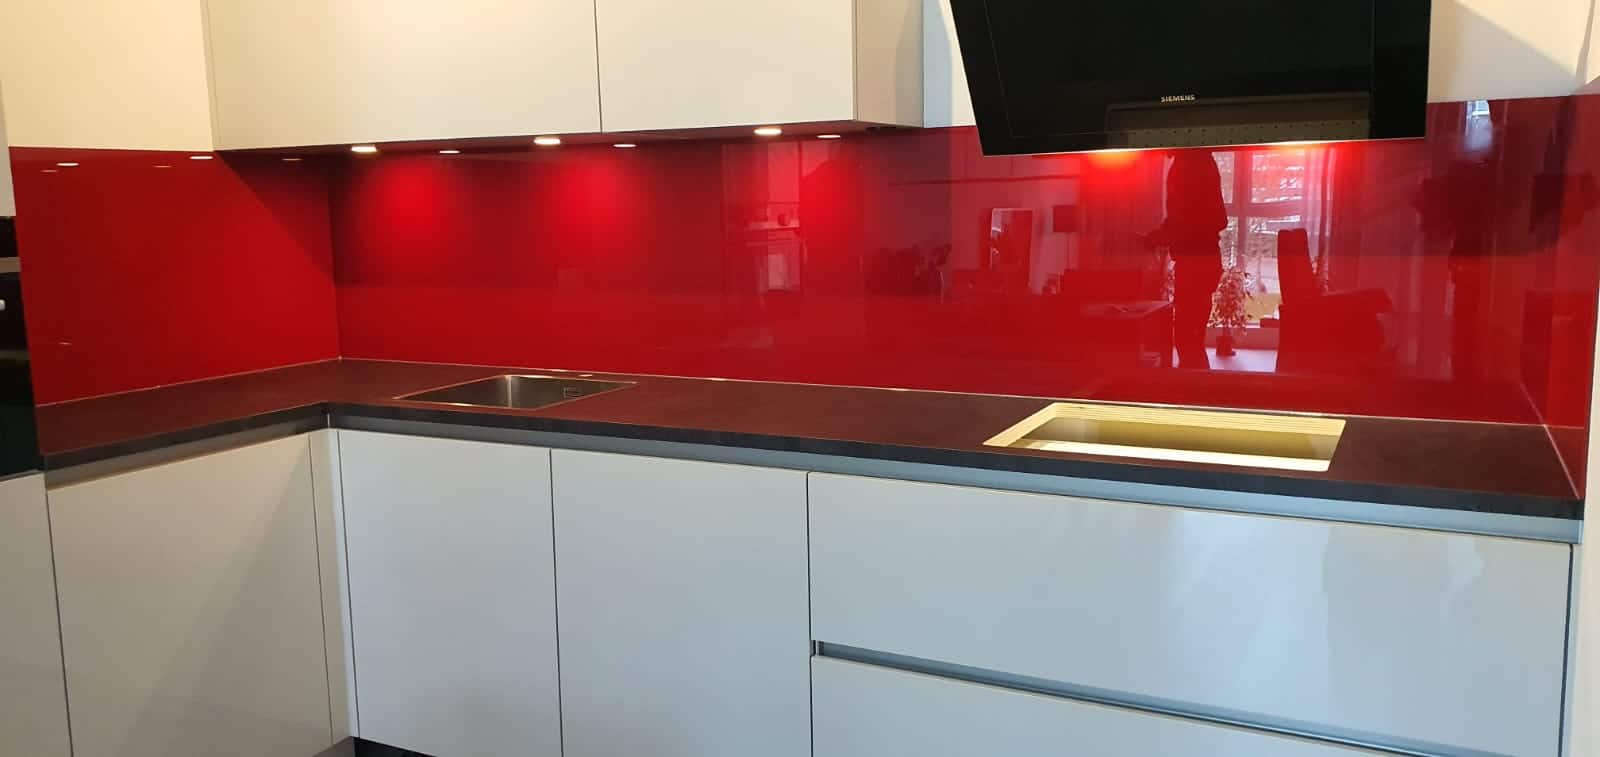 glazen achterwand in de keuken in rode kleur